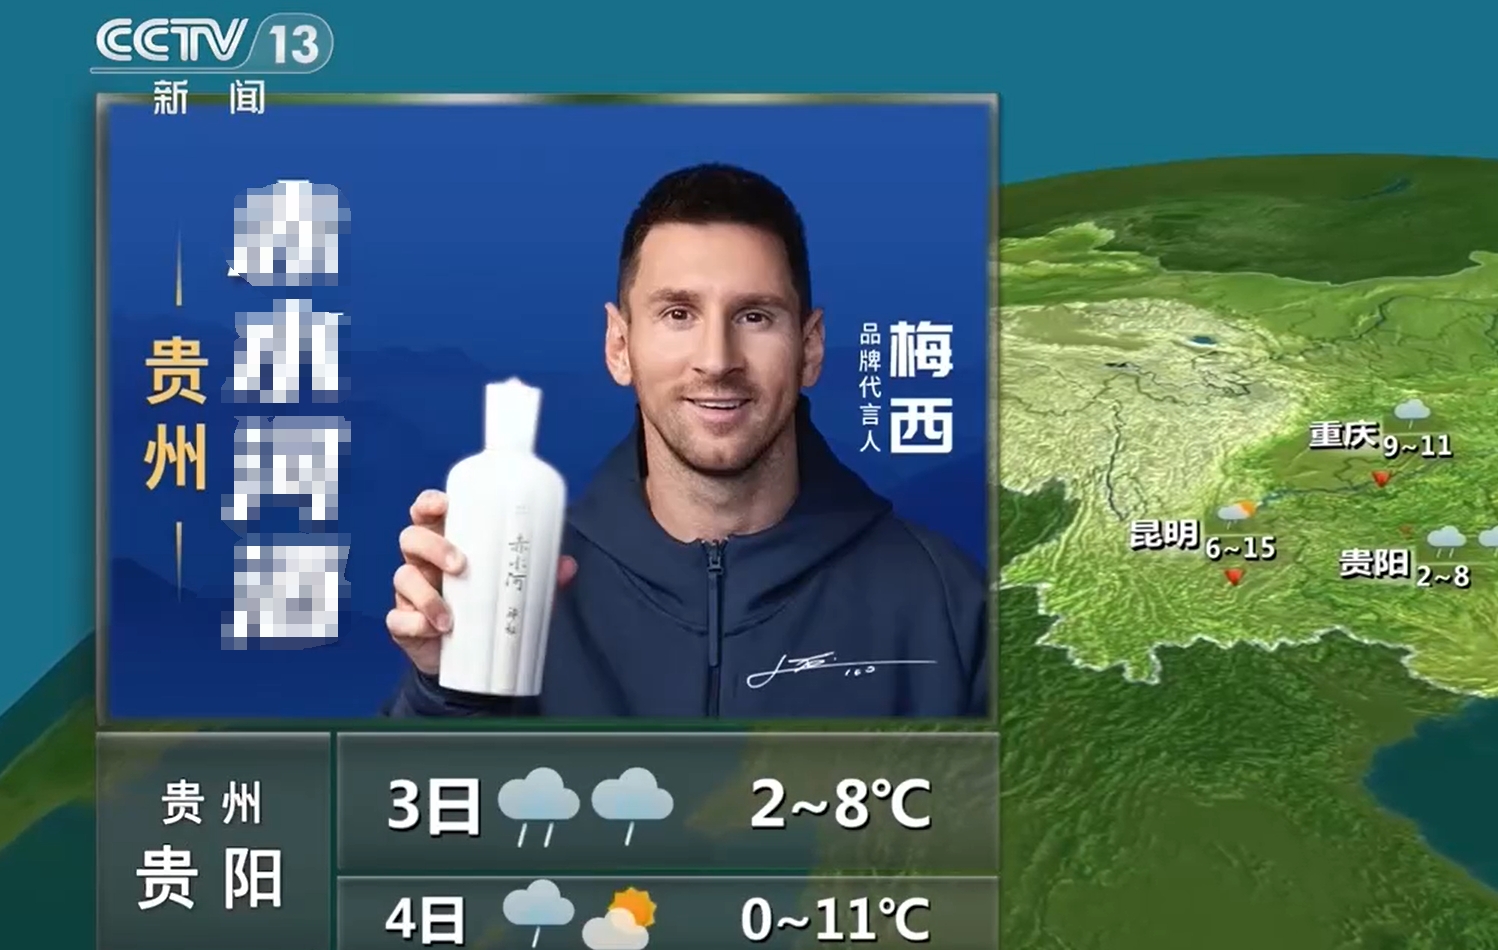 央视天气预报将梅西代言广告画面替换